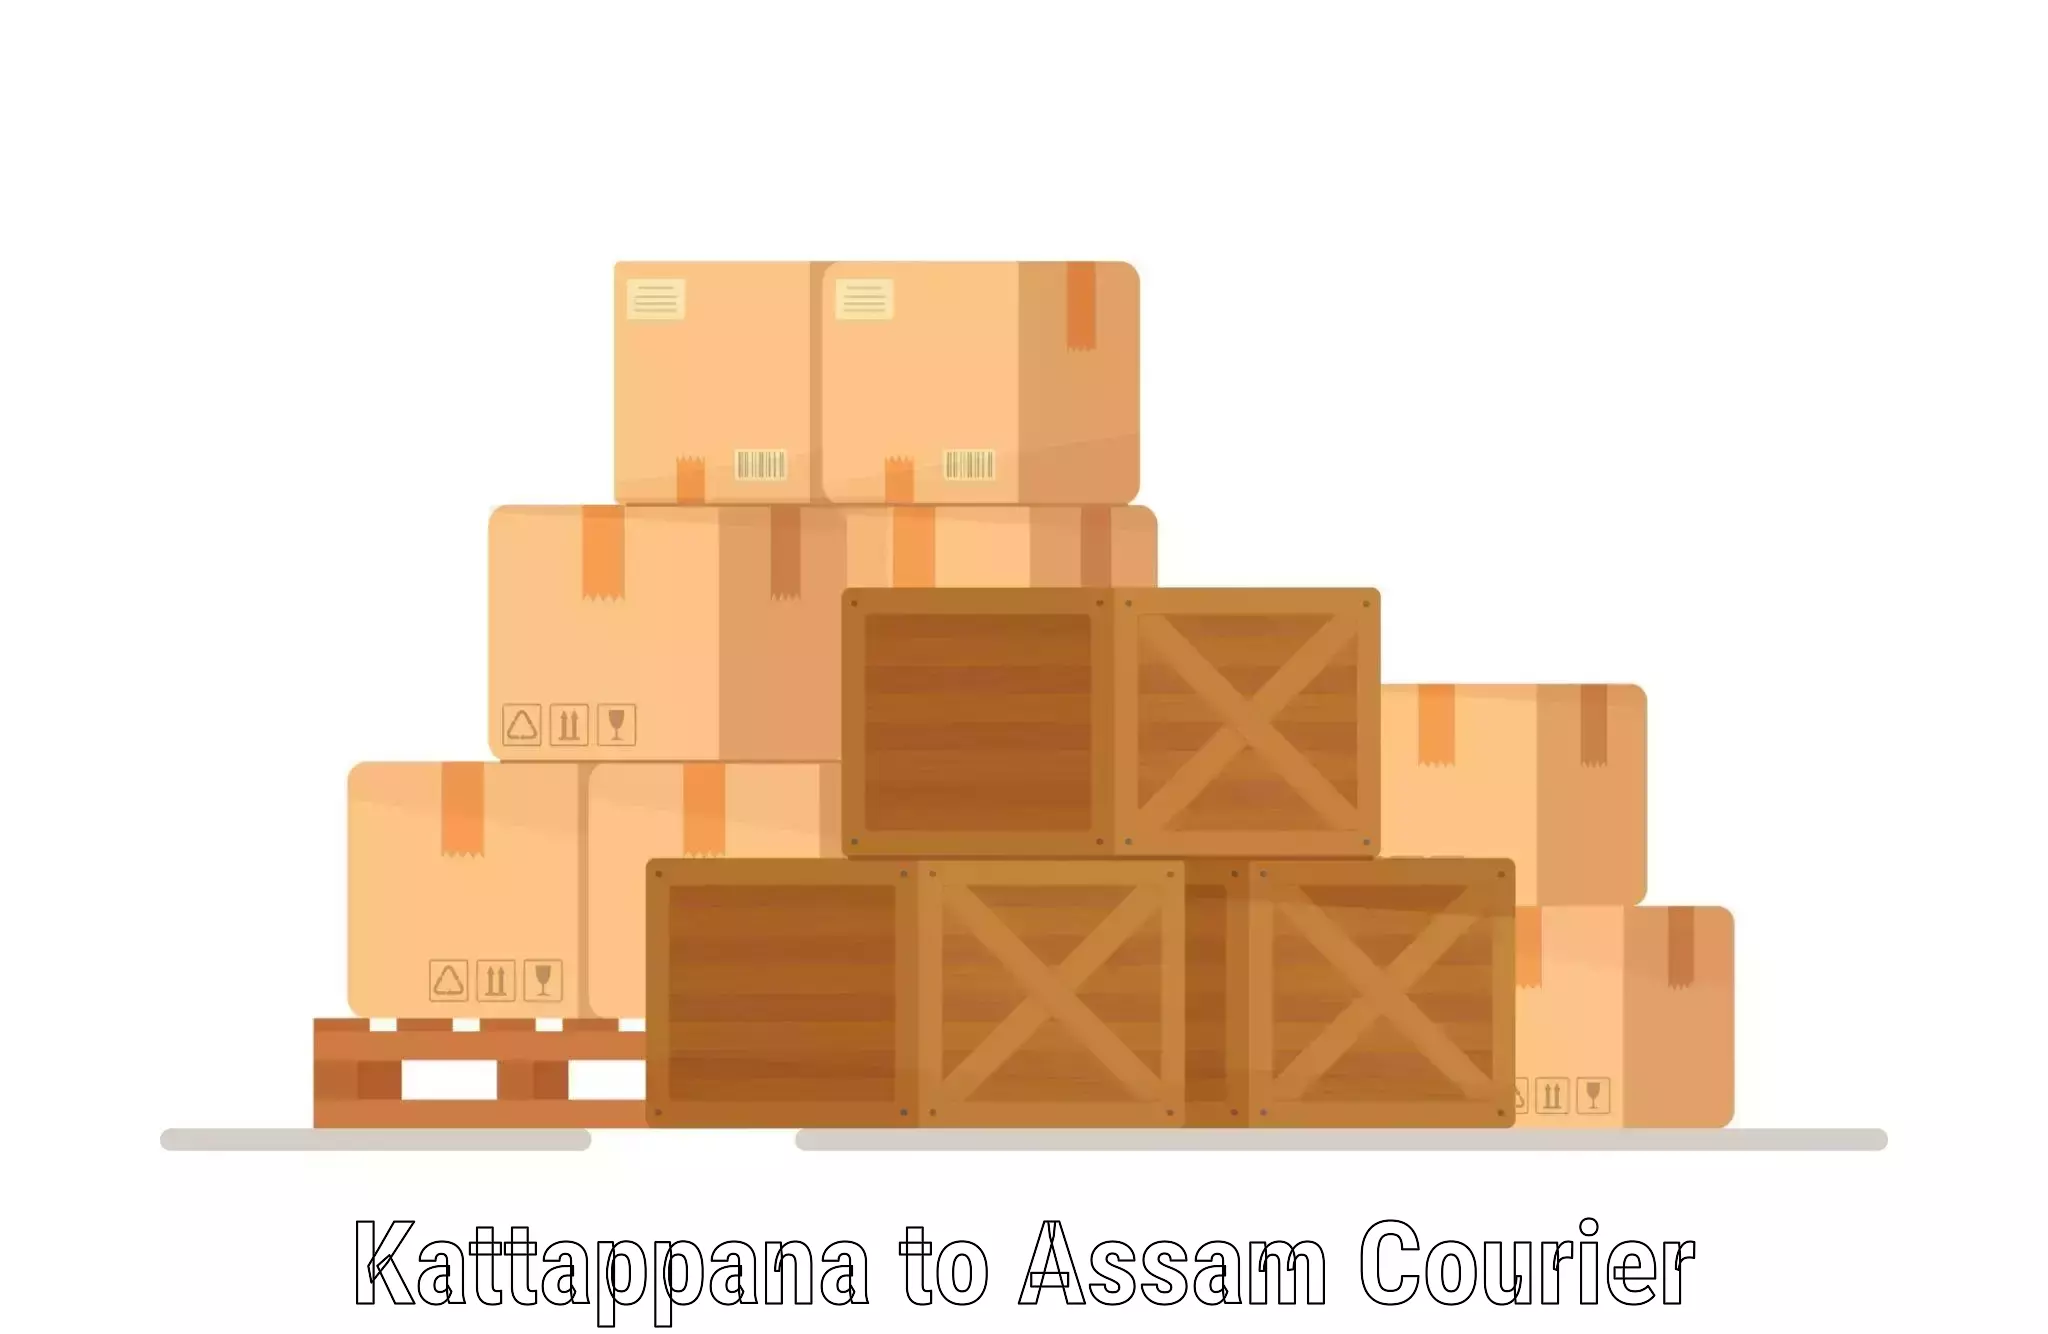 Parcel delivery automation Kattappana to Nazira